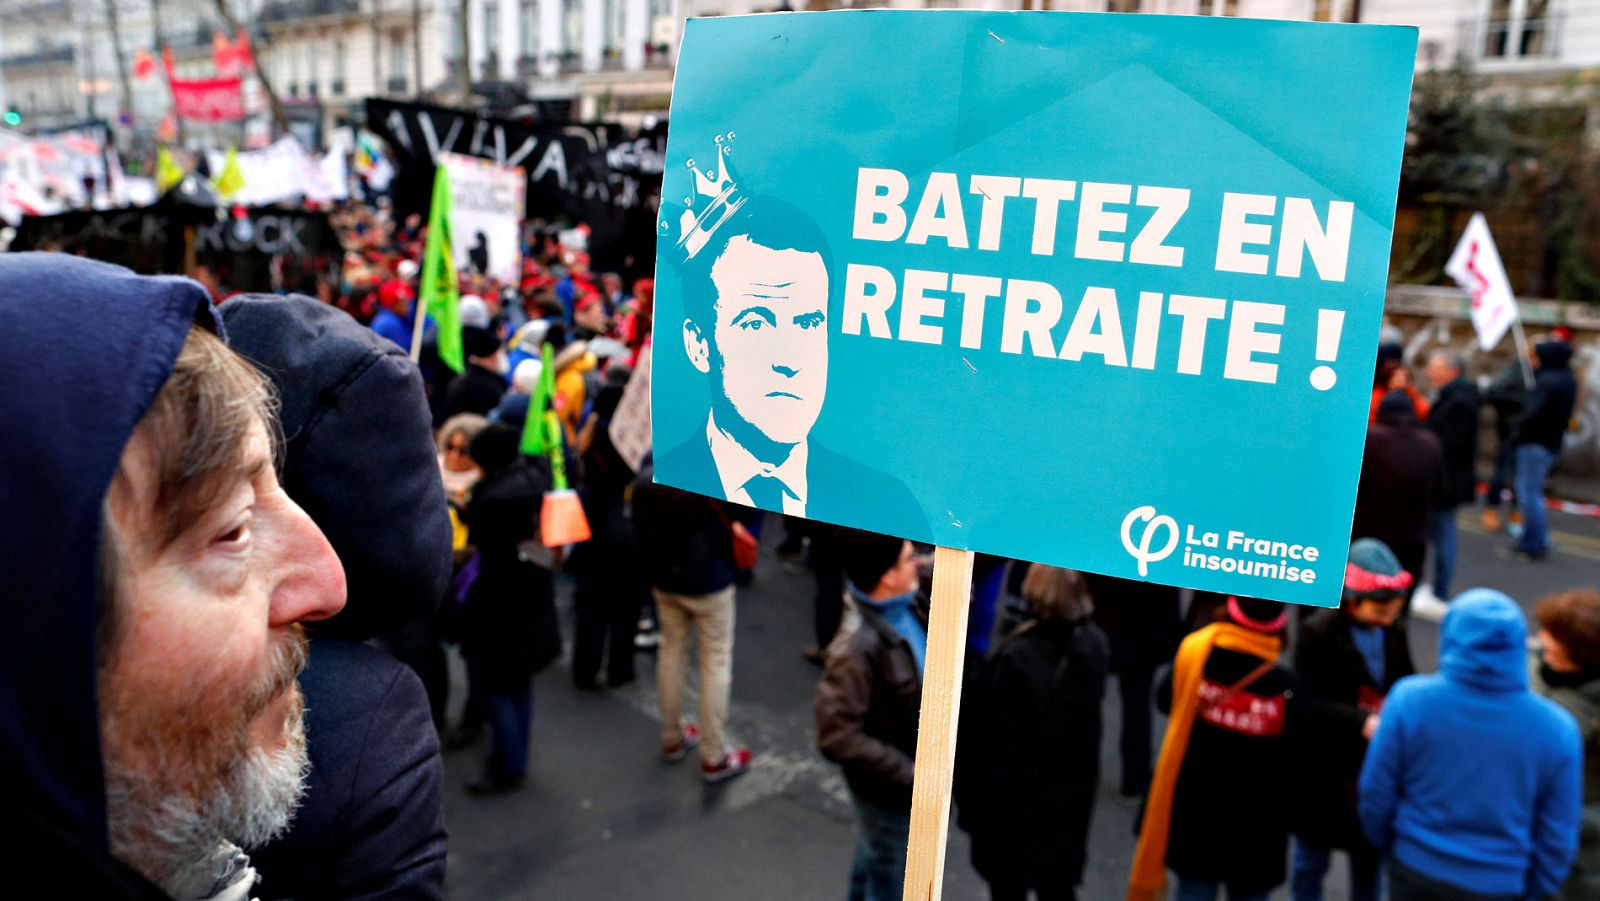 Séptima huelga general en Francia tras siete semanas de conflicto contra la reforma de las pensiones